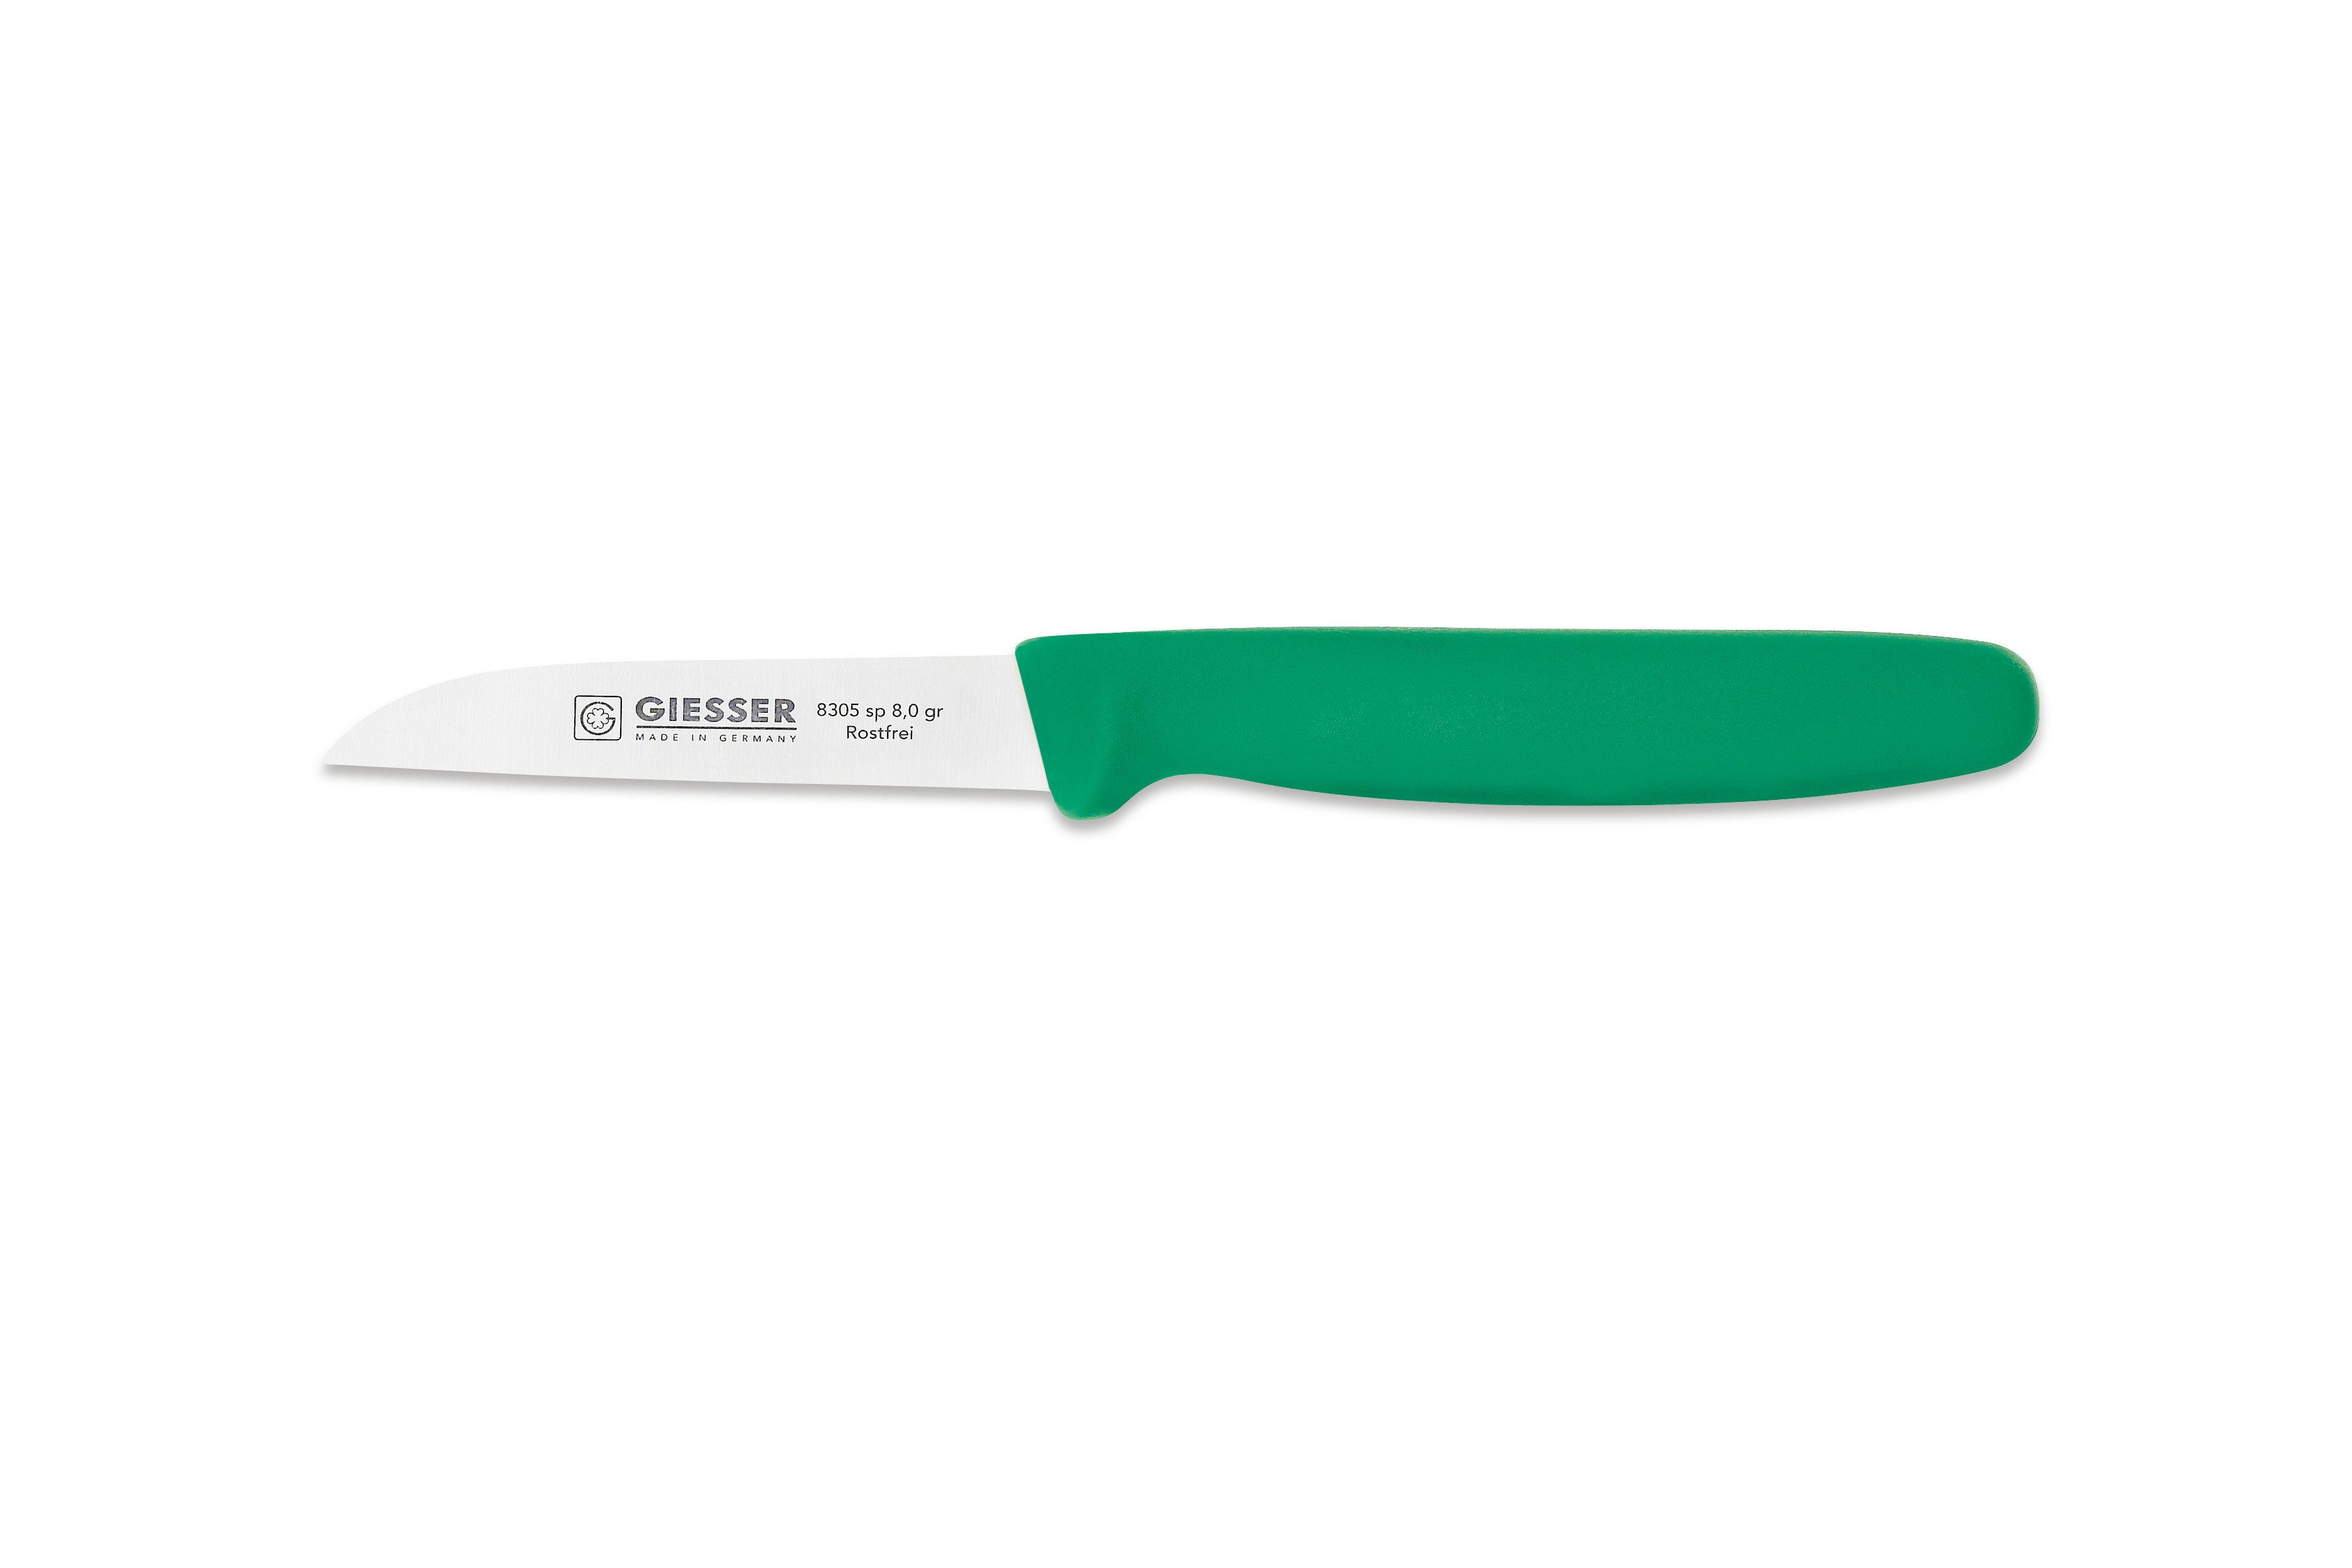 Küchenmesser gerade Gemüsemesser Germany Farben, sp Giesser alle Schneide 8 Made Küchenmesser in cm, 8305 8 Grün Messer